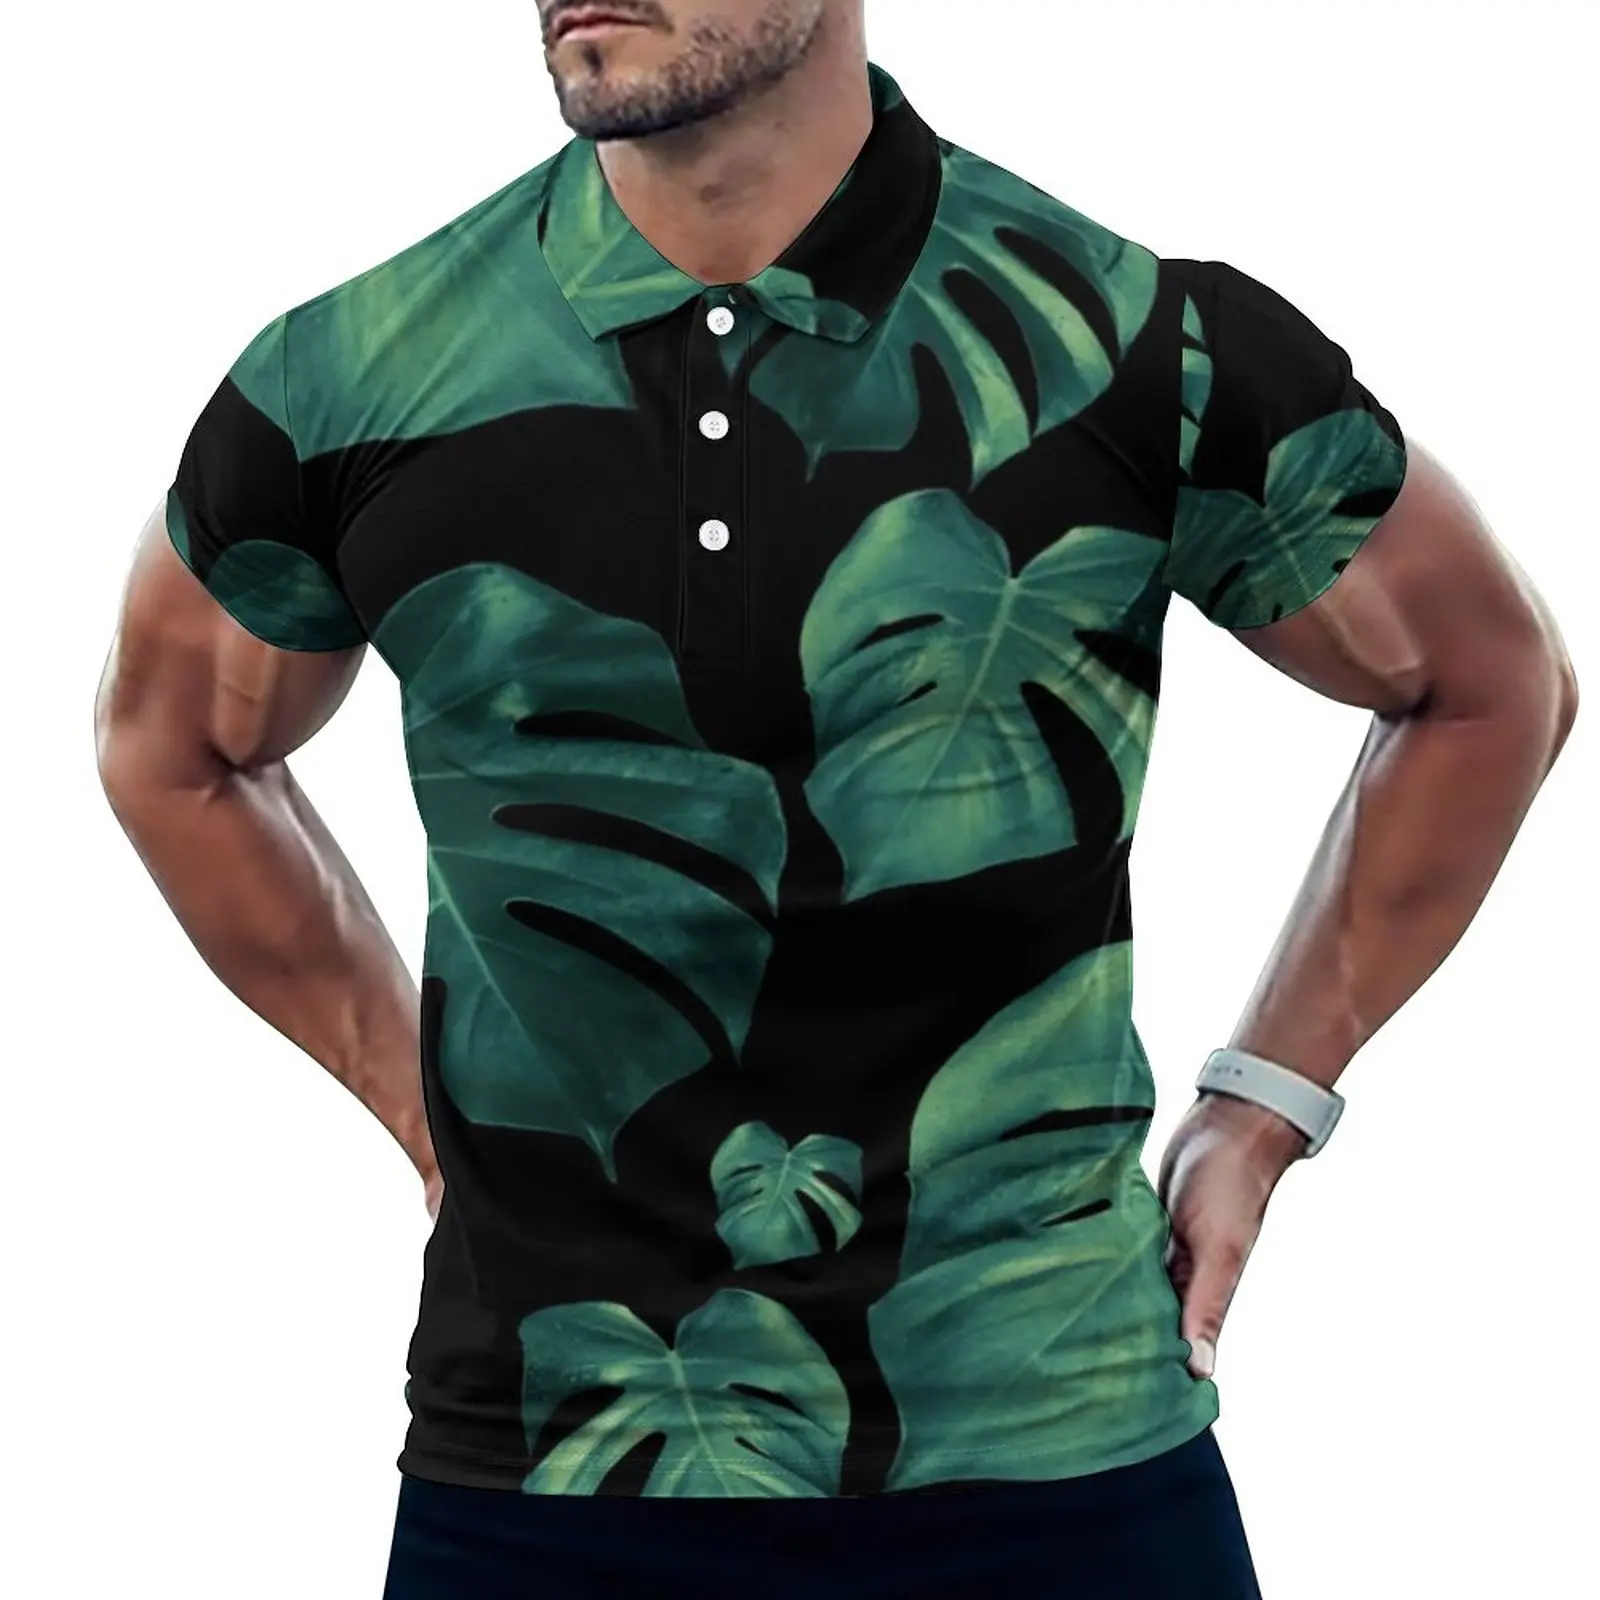 

Рубашка-поло Monstera мужская с принтом зеленых листьев, Повседневная модная рубашка с коротким рукавом и воротником в стиле оверсайз